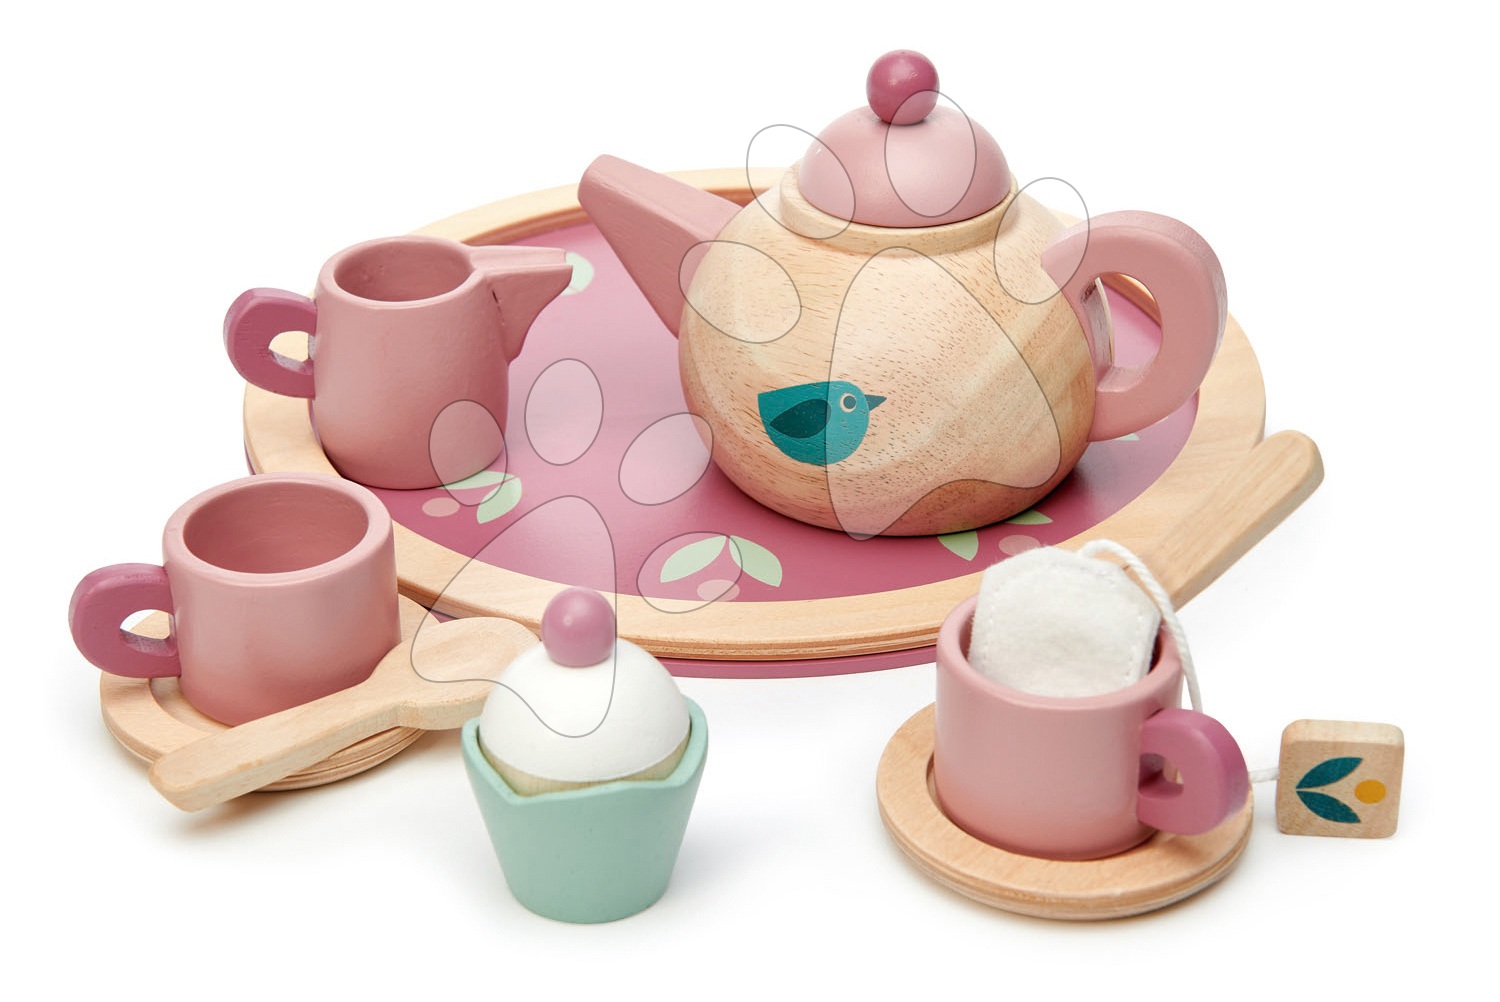 Fa teáskészlet Birdie Tea set Tender Leaf Toys tálcán csészékkel és teafilterrel